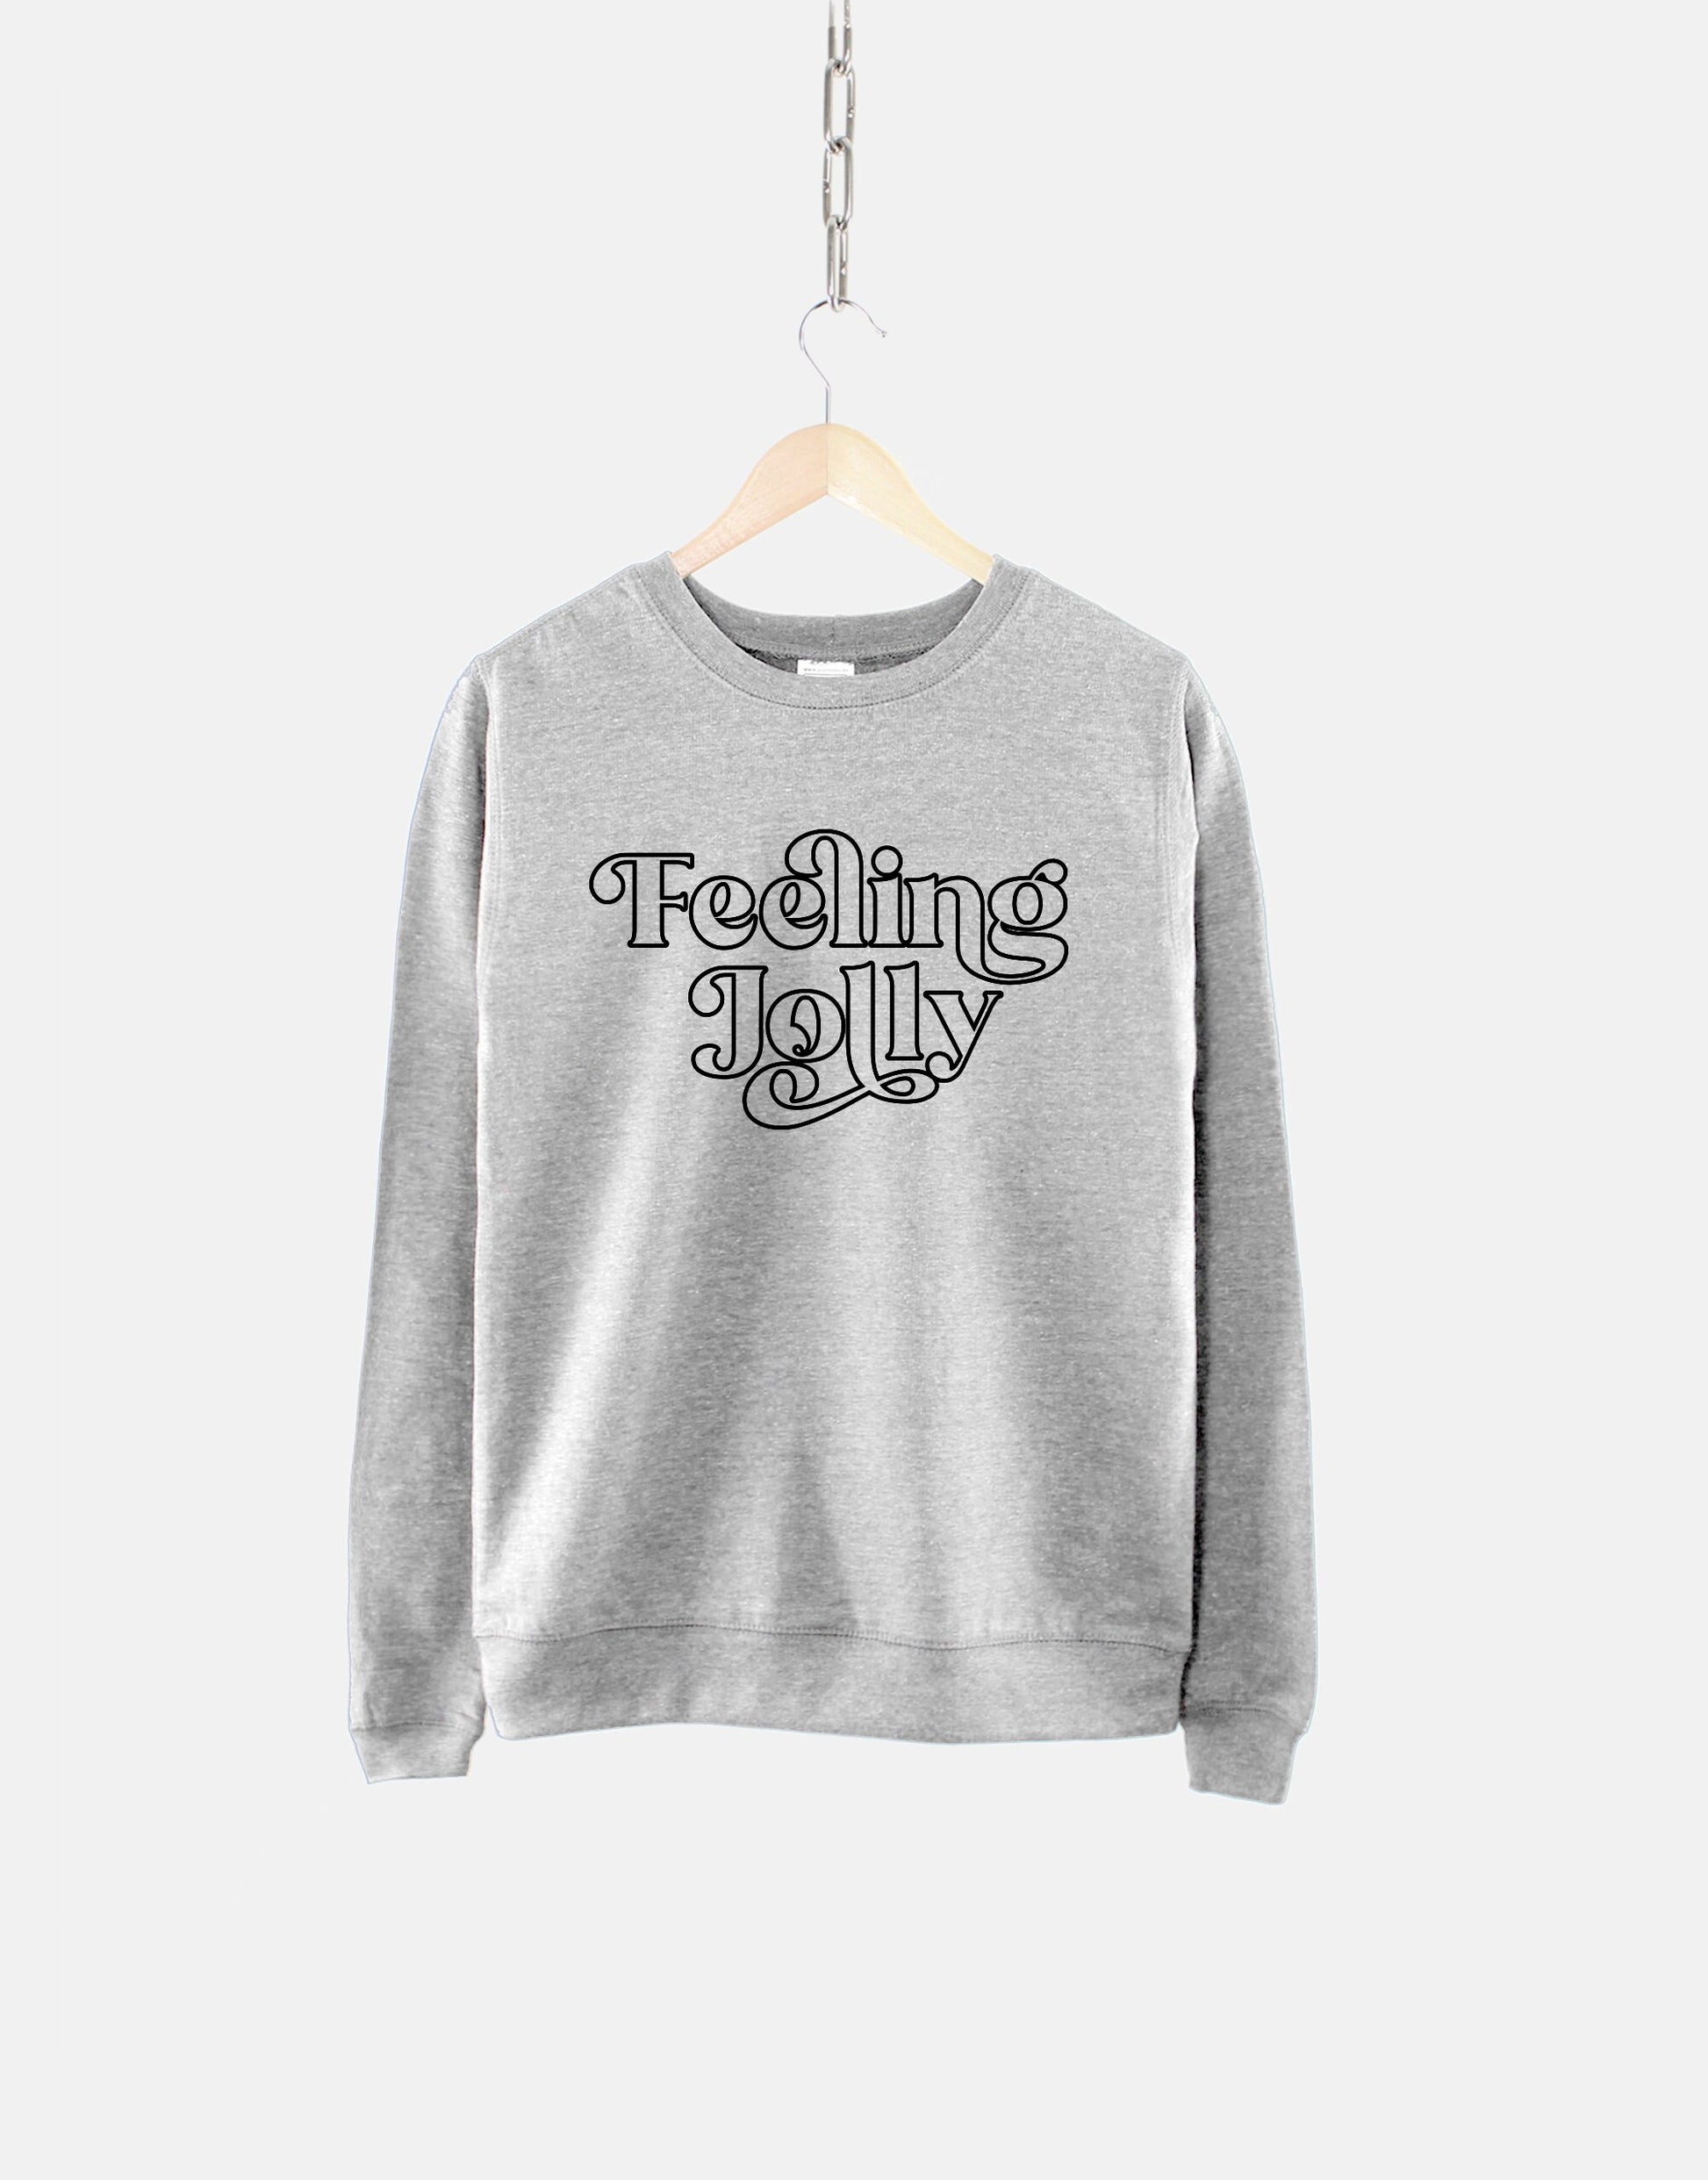 Feeling Jolly Christmas - Chri Shop - Christmas Retro Sweatshirt Qurious Sweatshirt –